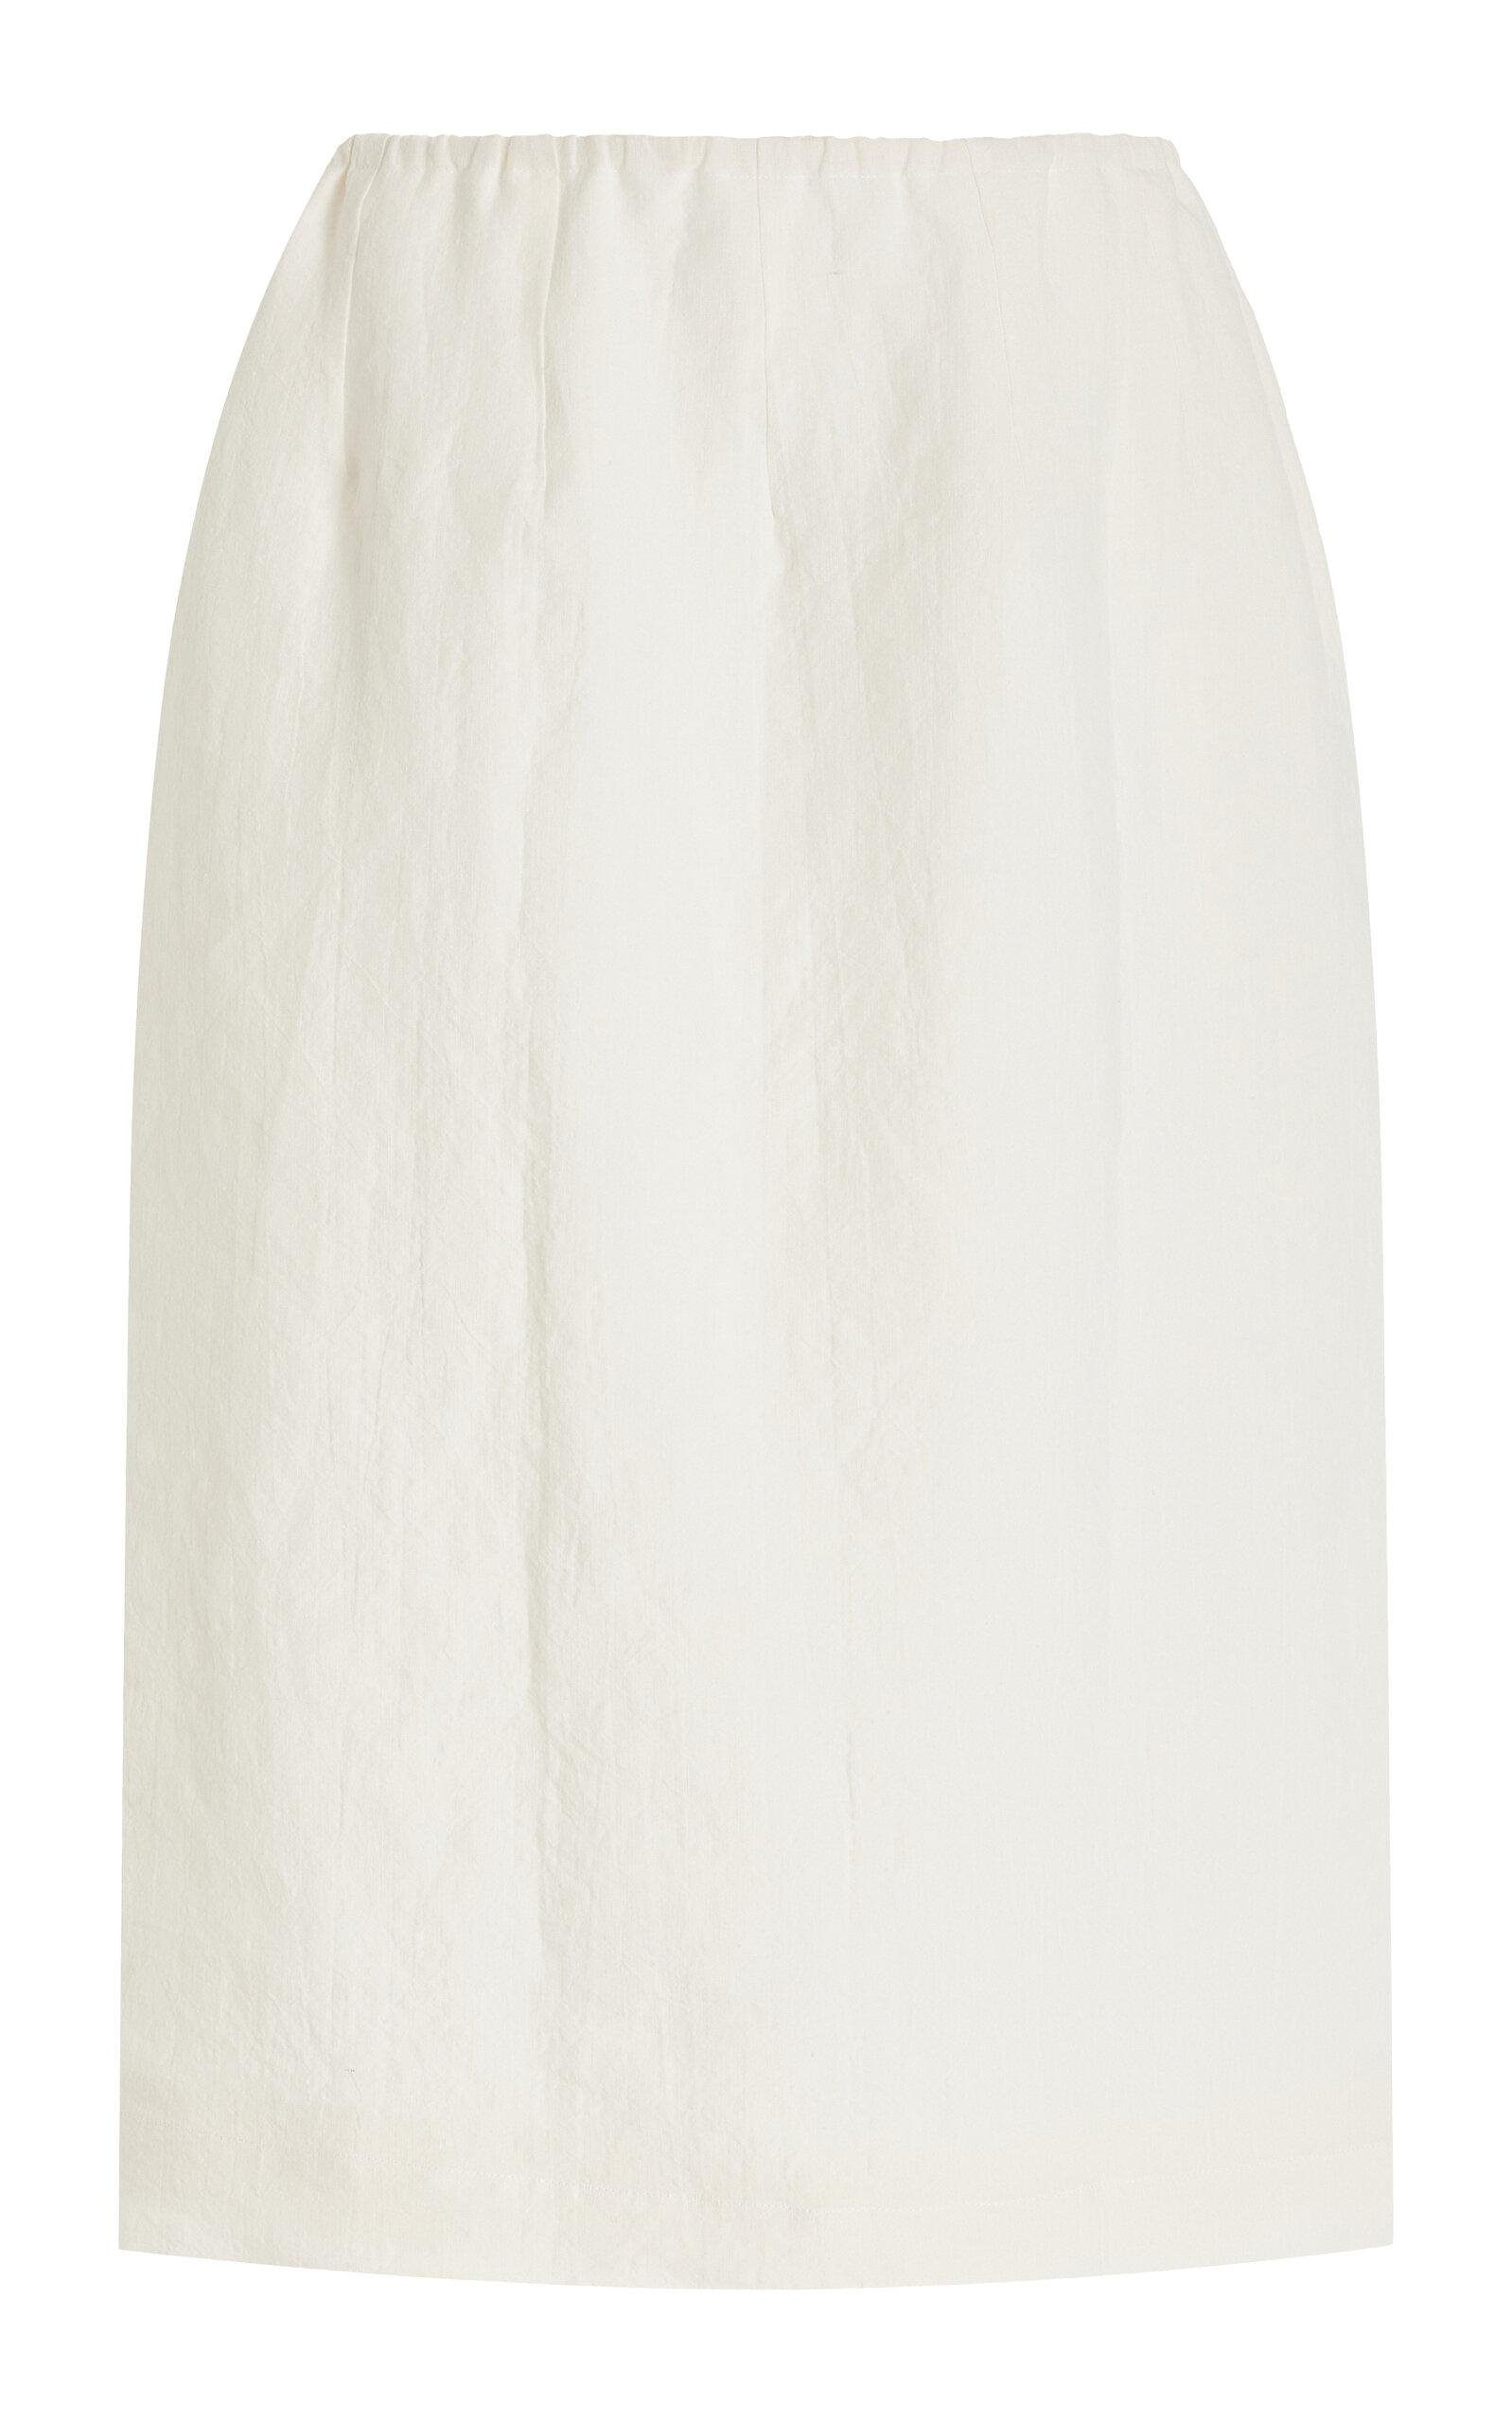 Cvet Preri - Allium Washed Linen Midi Skirt - Ivory - L - Only At Moda Operandi by CVET PRERI